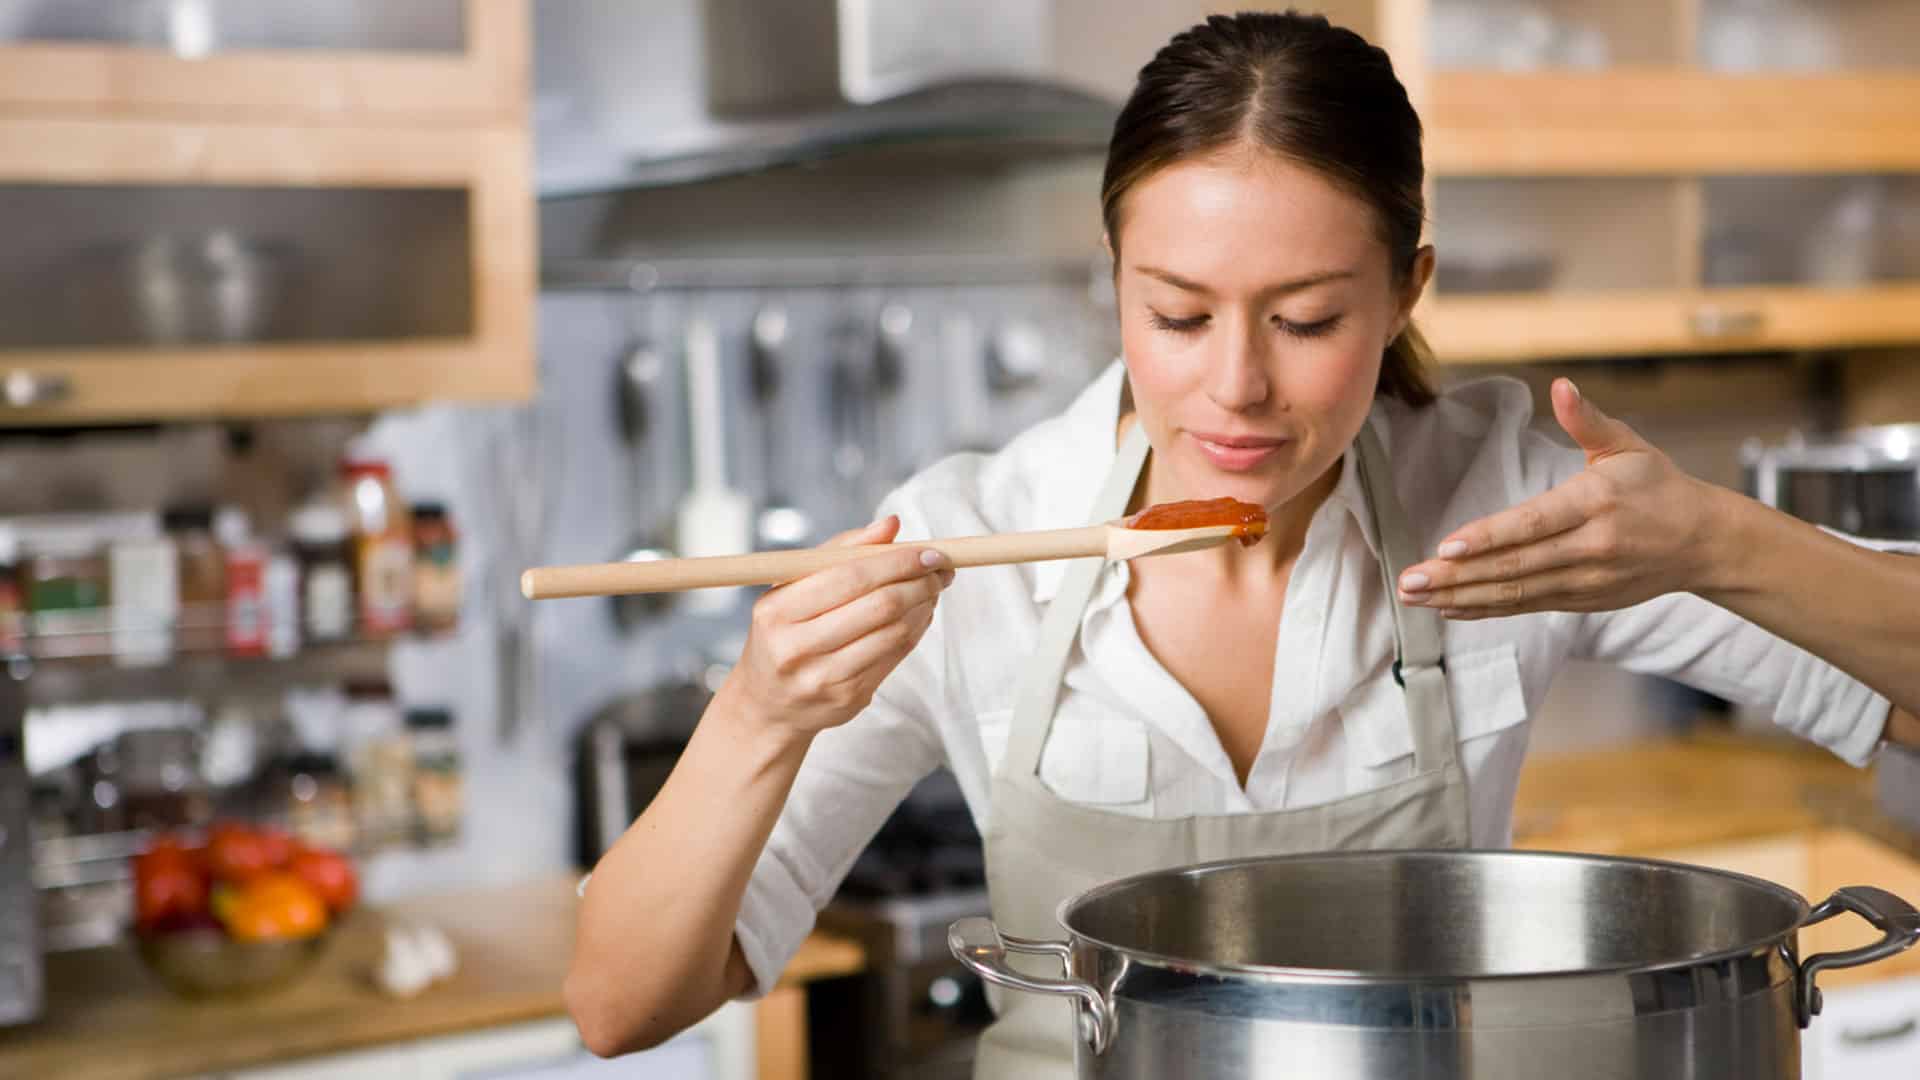 لا تجعلي الطهي إهدارا لفوائد الطعام واتبعي هذه الأساليب